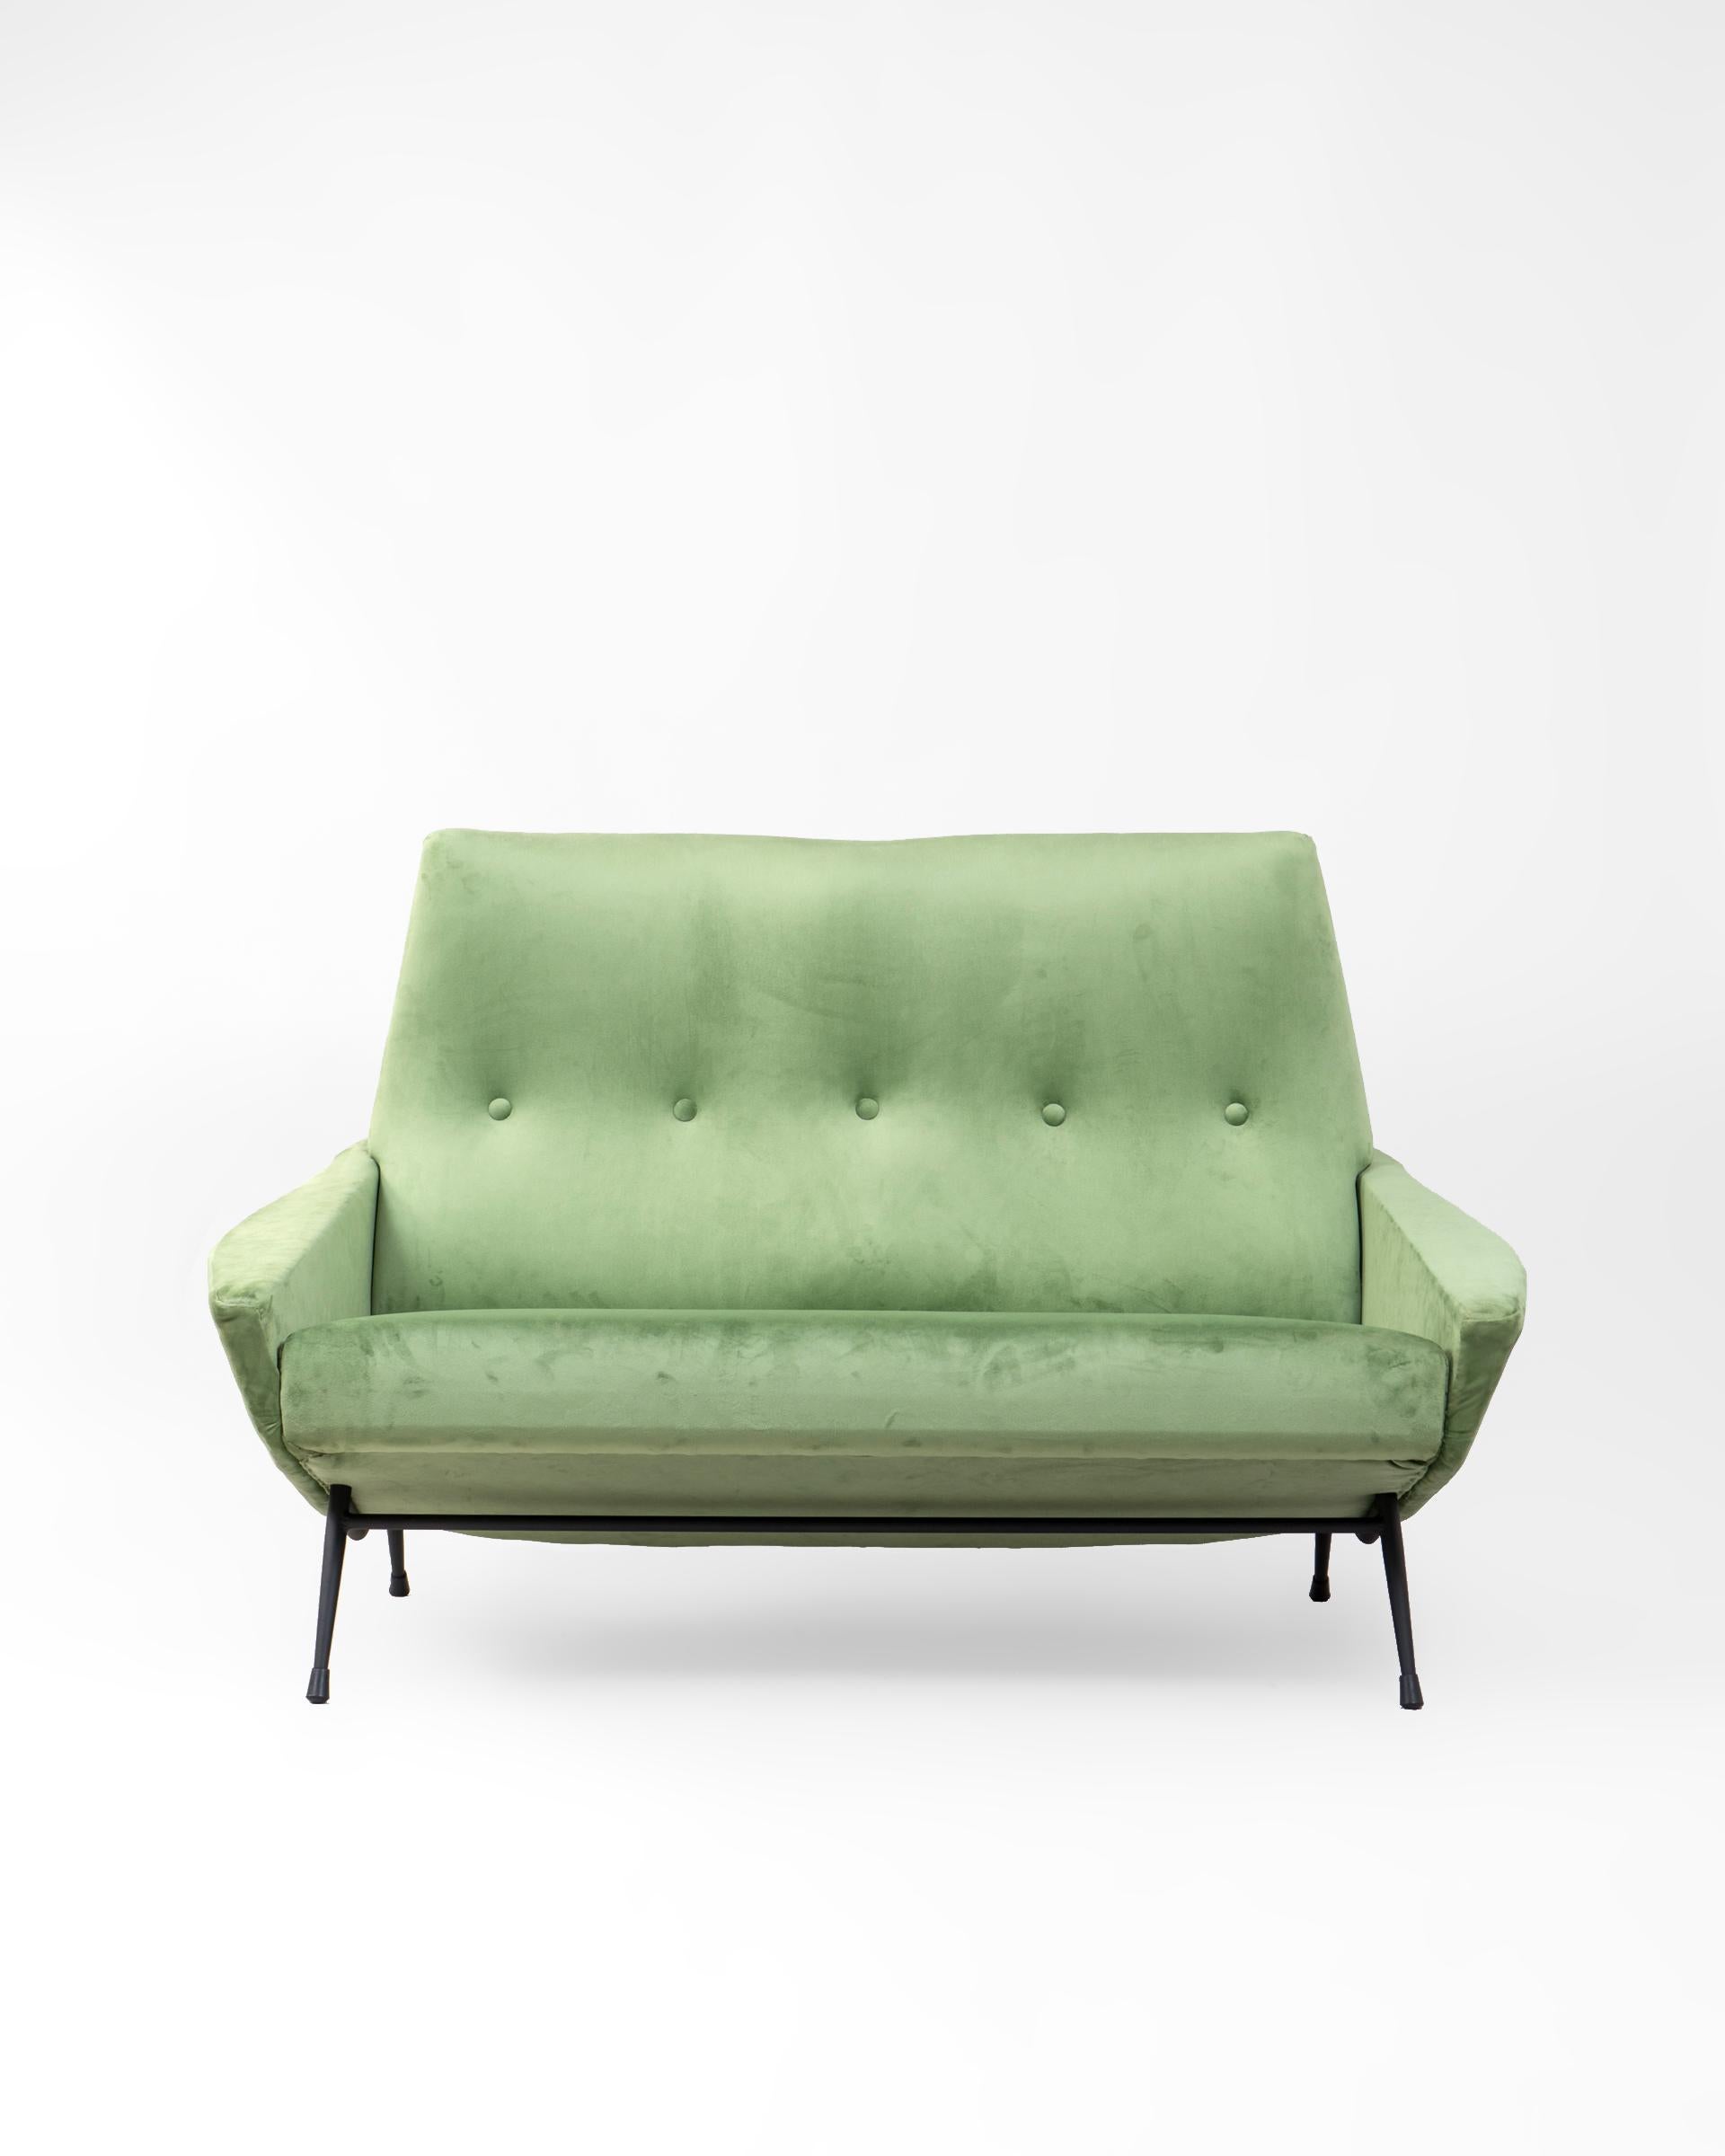 Sofá de dos plazas del diseñador francés Guy Besnard tapizado en terciopelo verde. Pieza original de la década de los 1950’s con un marcado estilo del diseño francés de la época.

Estructura de madera maciza en la que tanto el asiento como el